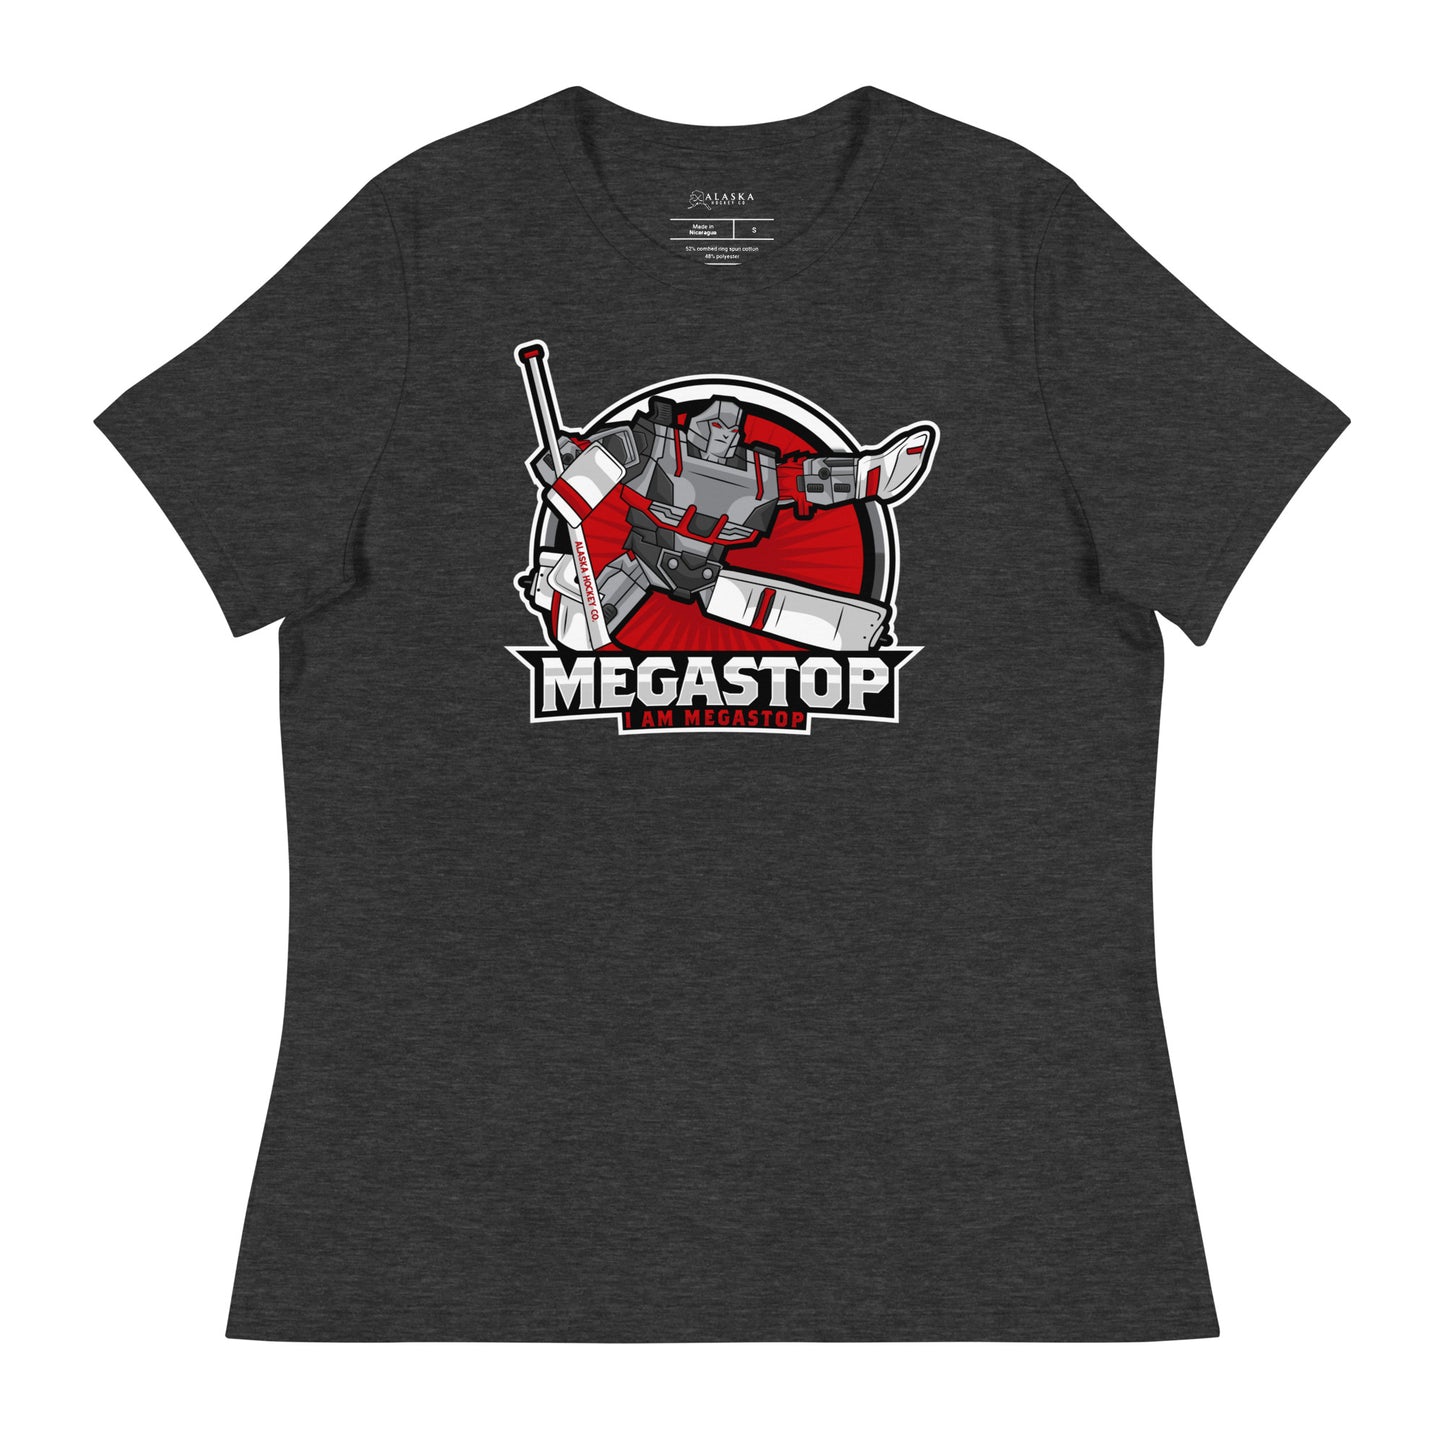 Megastop Women's Relaxed T-Shirt